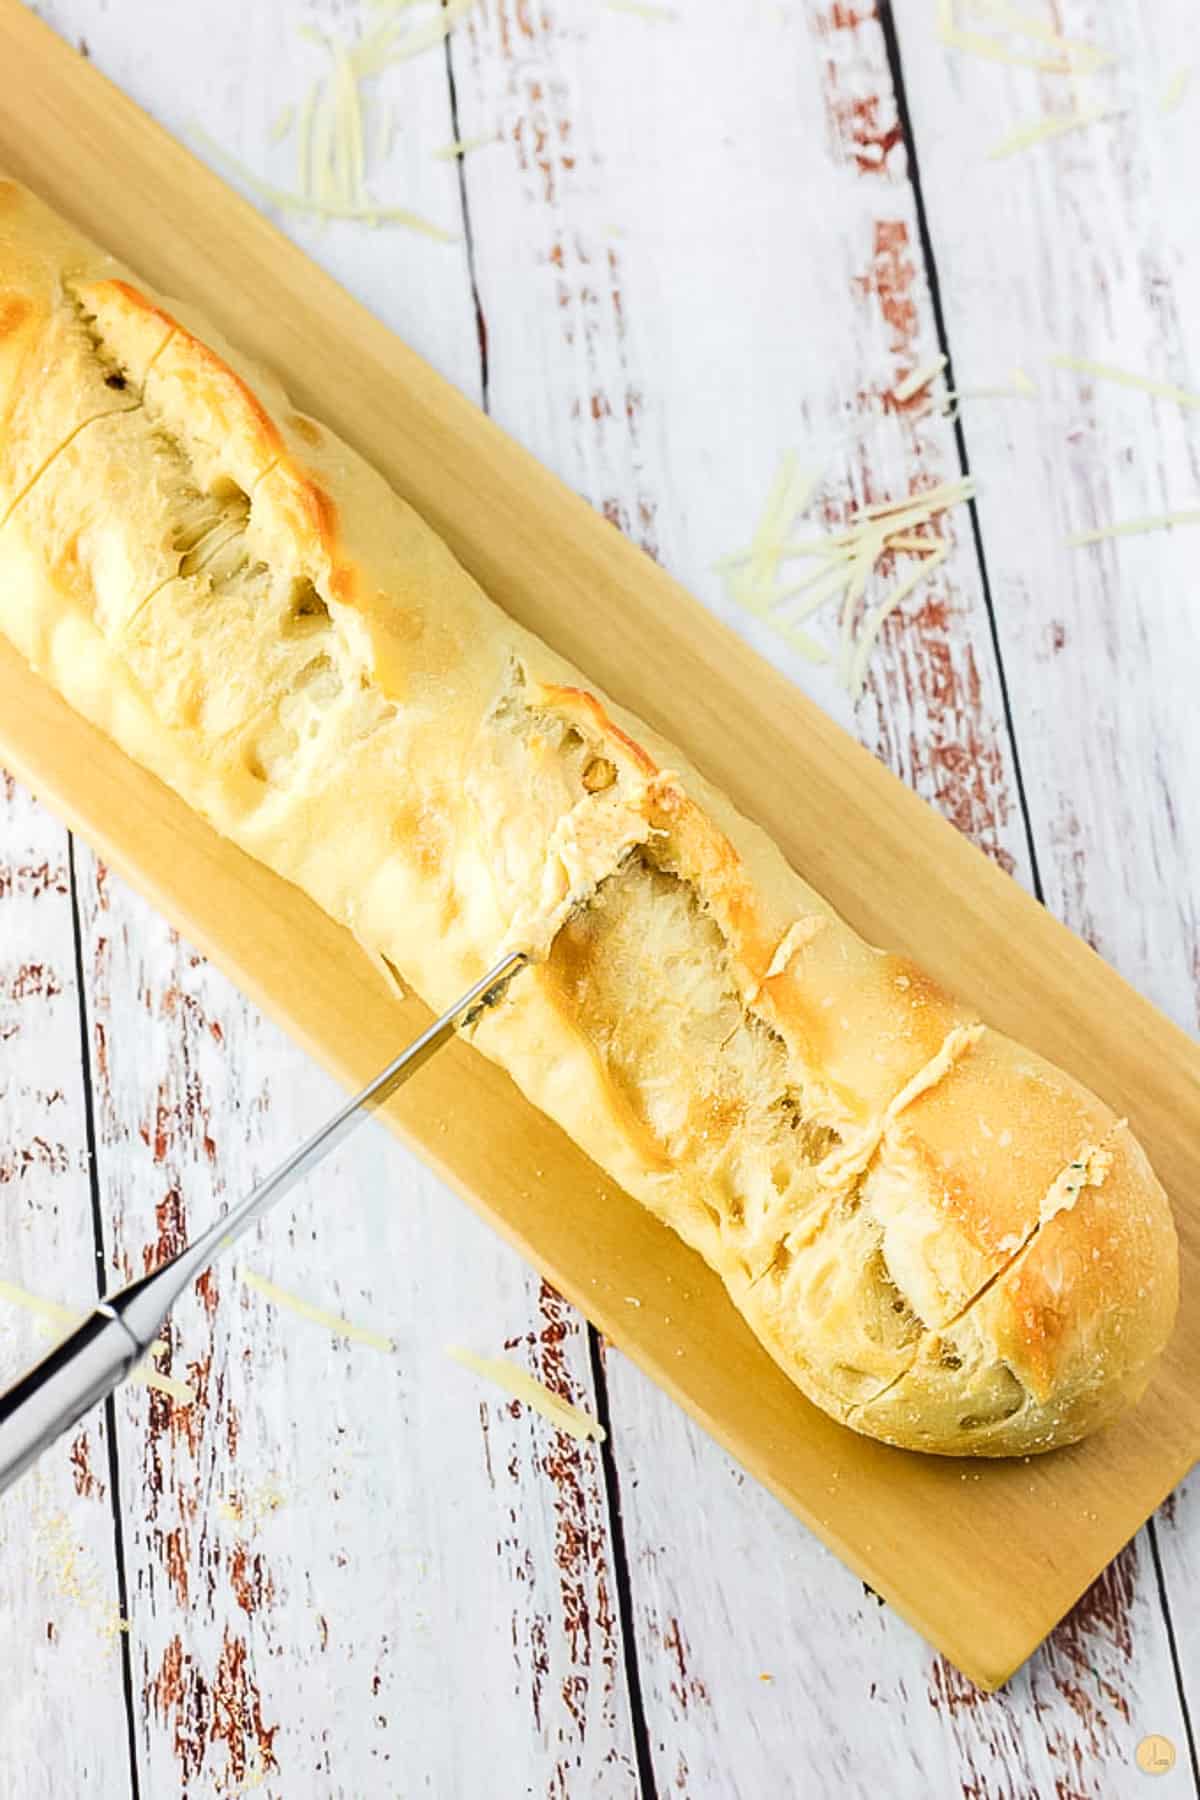 knife slicing bread